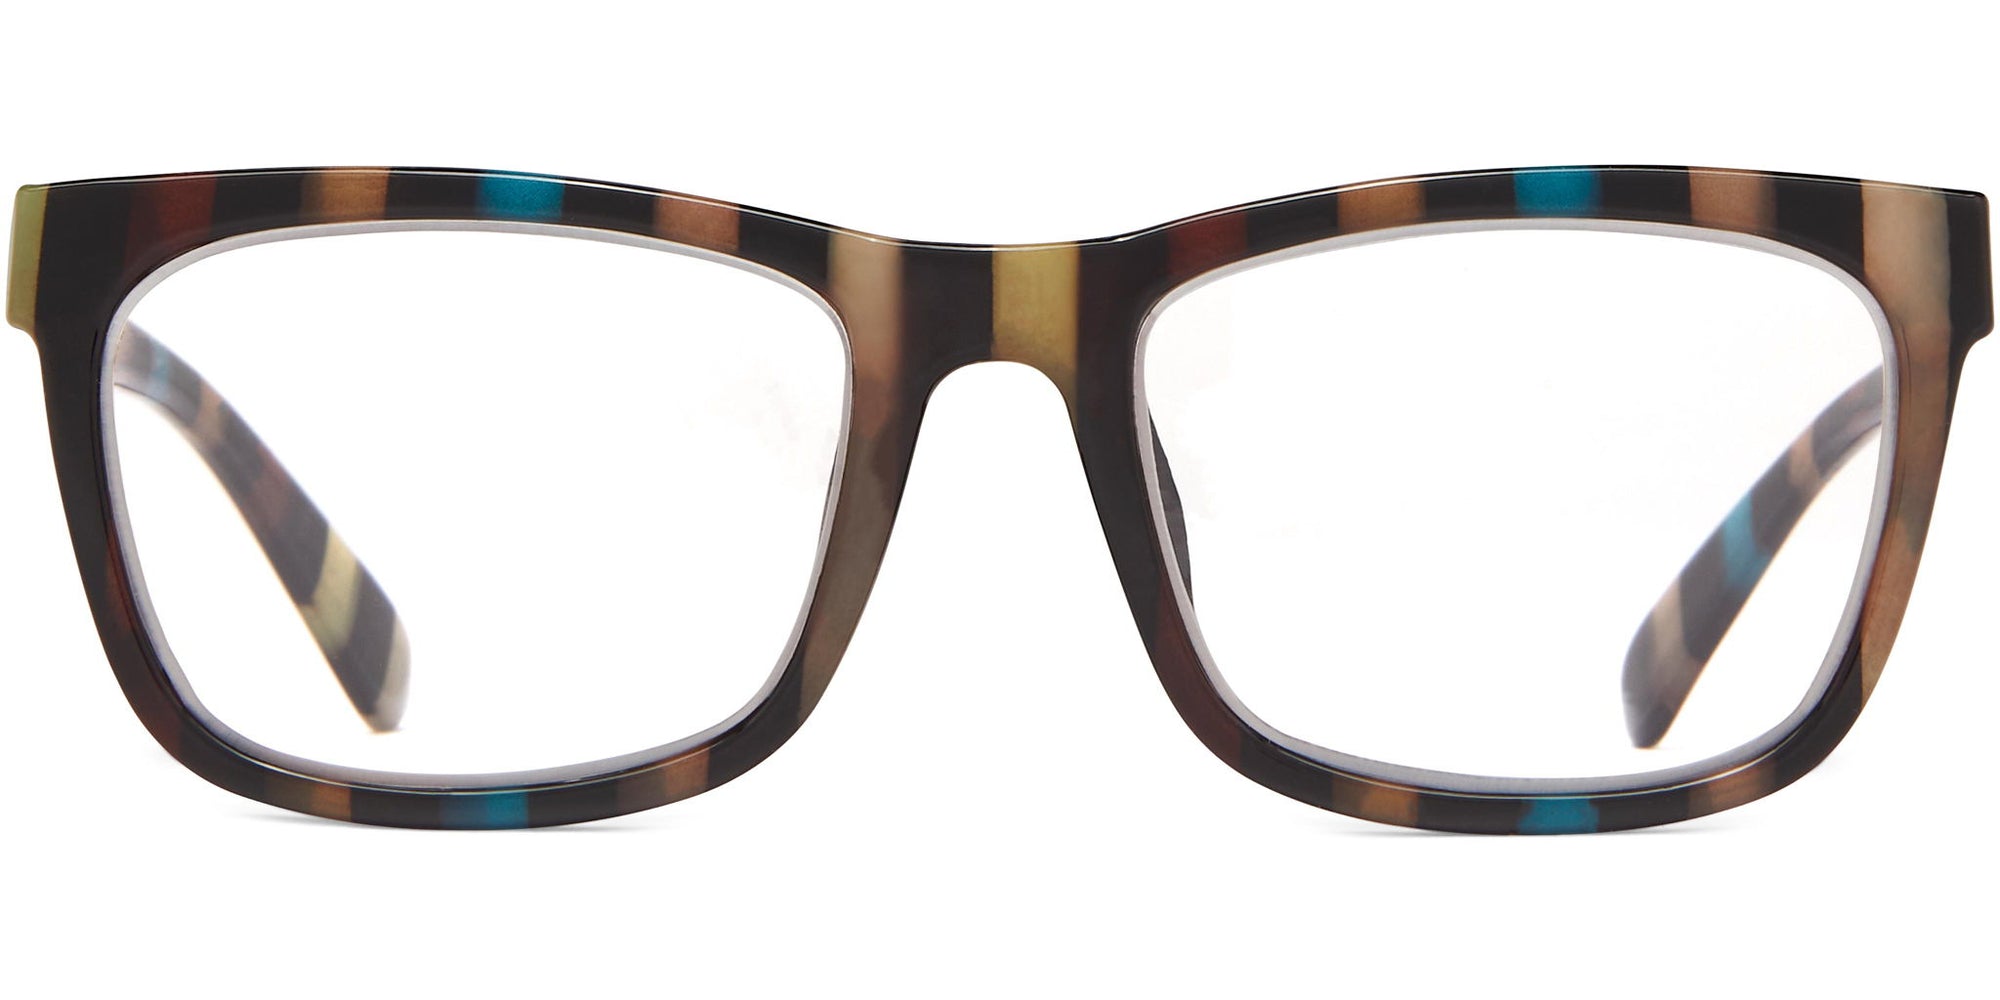 Brigiatta - Brown / 1.25 - Reading Glasses